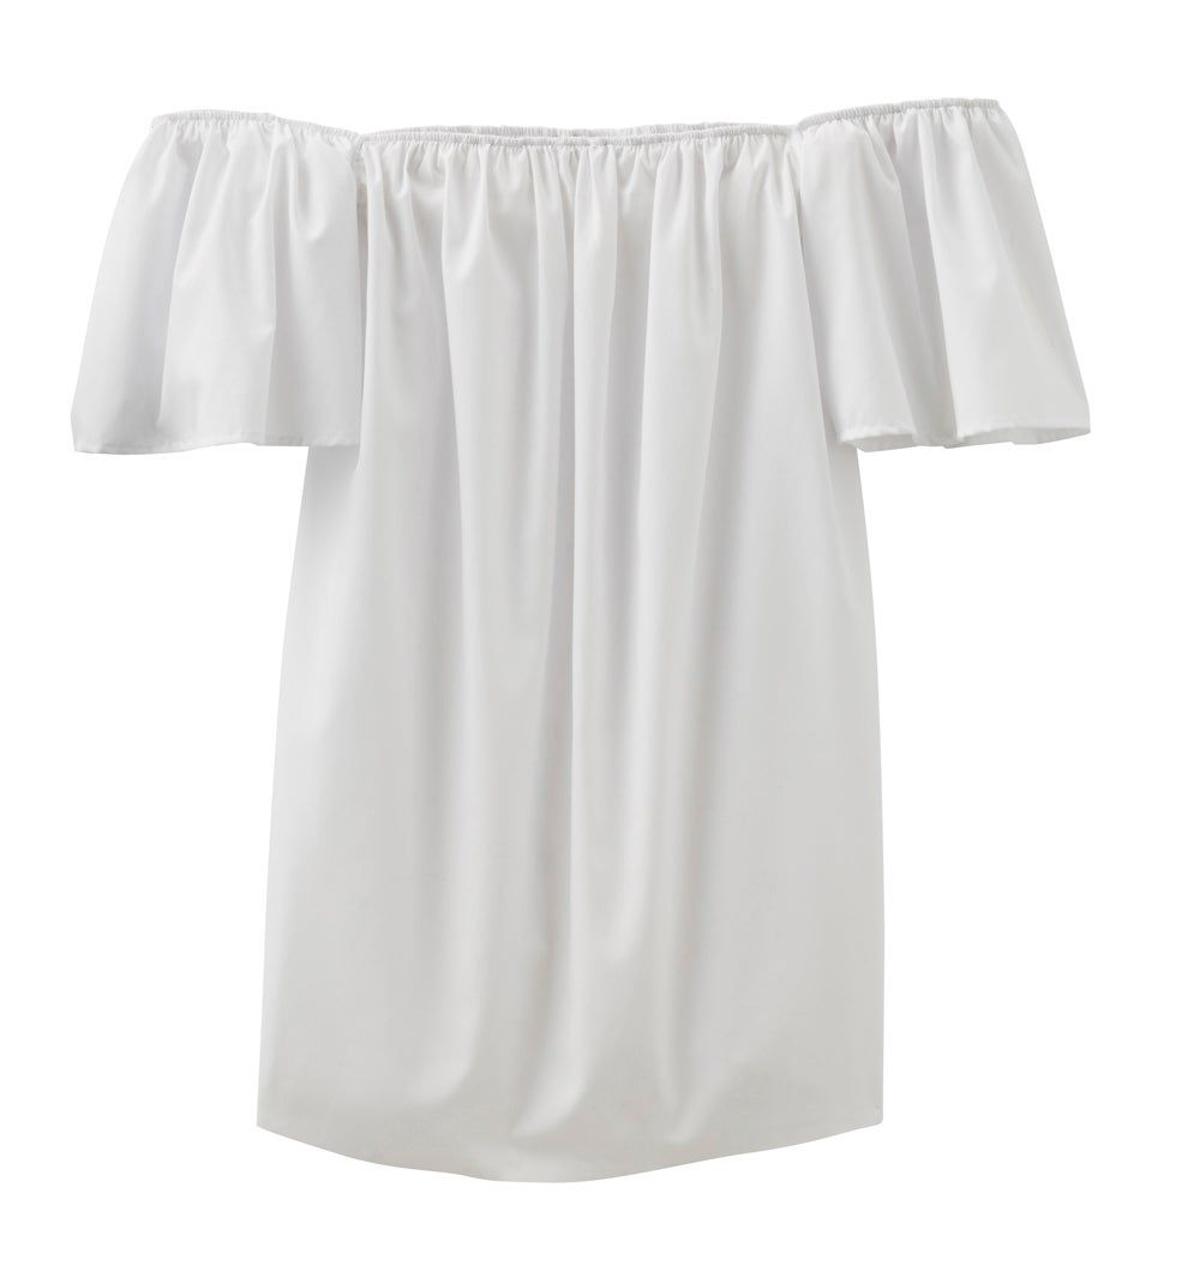 Vestido blanco con escote bardot (precio: 29,99 euros)